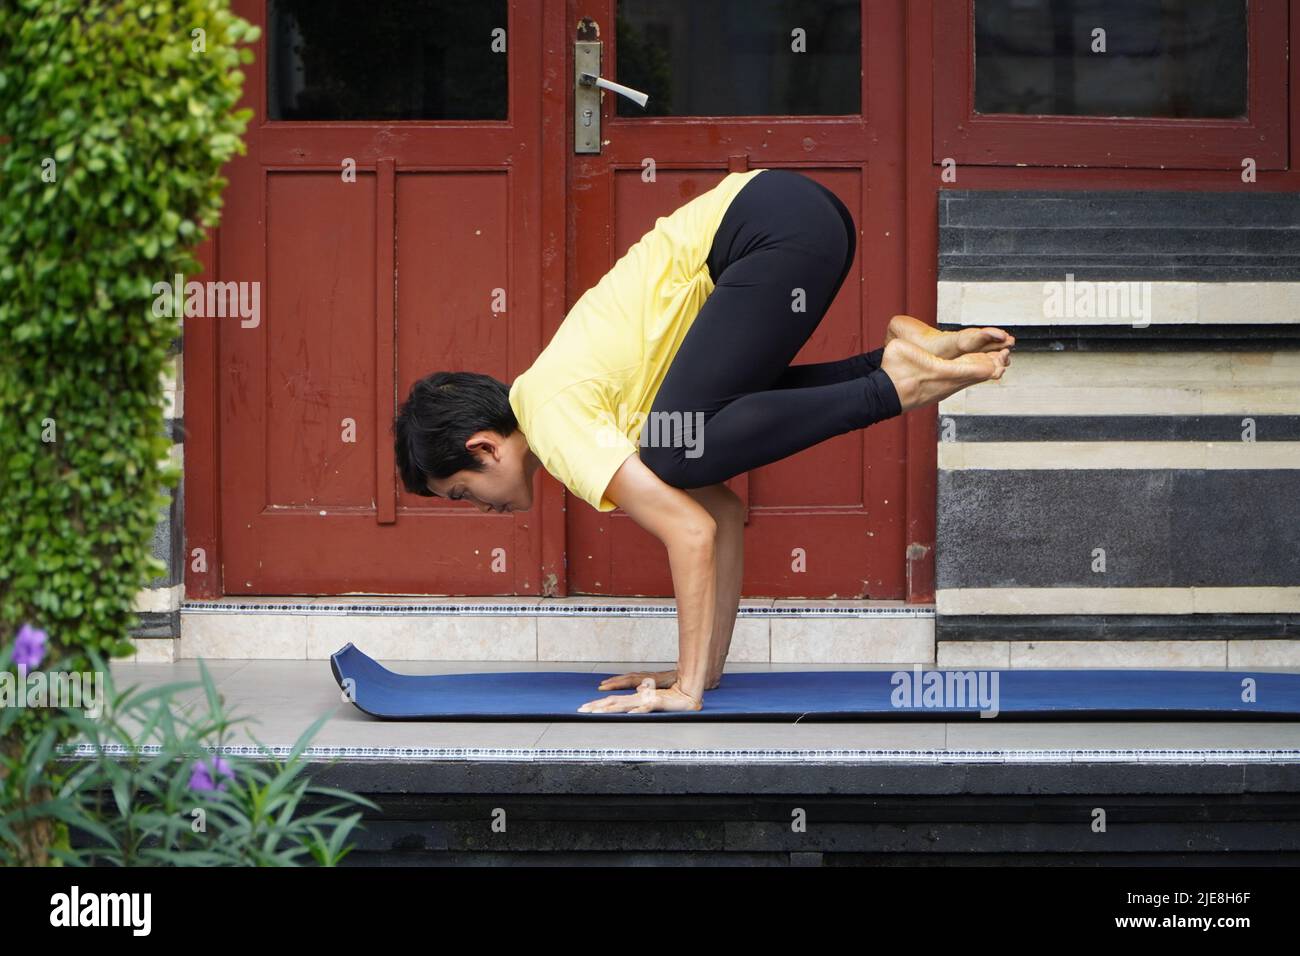 Sur sa terrasse, une jeune fille asiatique d'apparence étonnante pratique le yoga tout en portant une coupe courte, une chemise jaune et des leggings noirs. S Banque D'Images